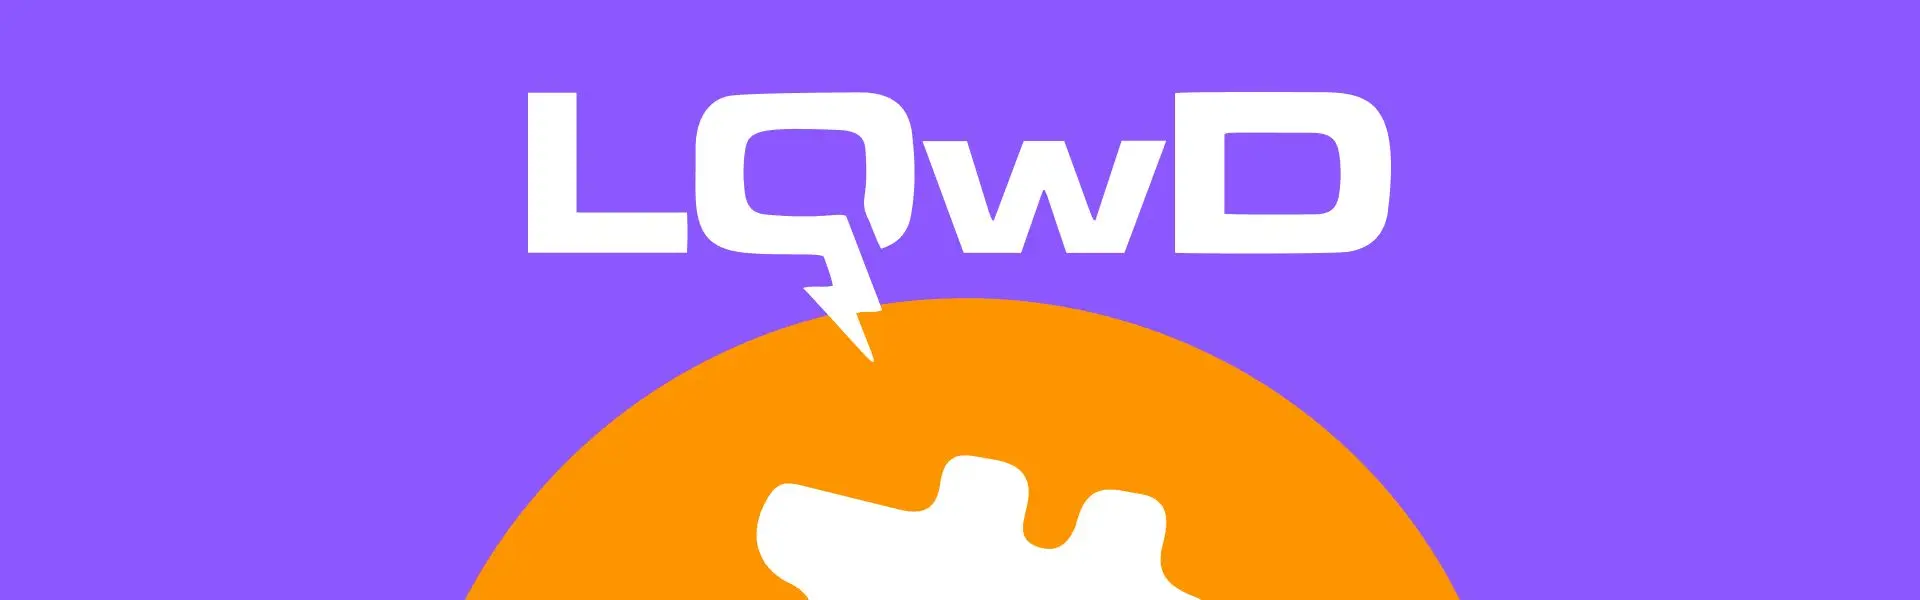 LQWD стане постачальником готівкових коштів для компанії, що працює з технологією Lightning.